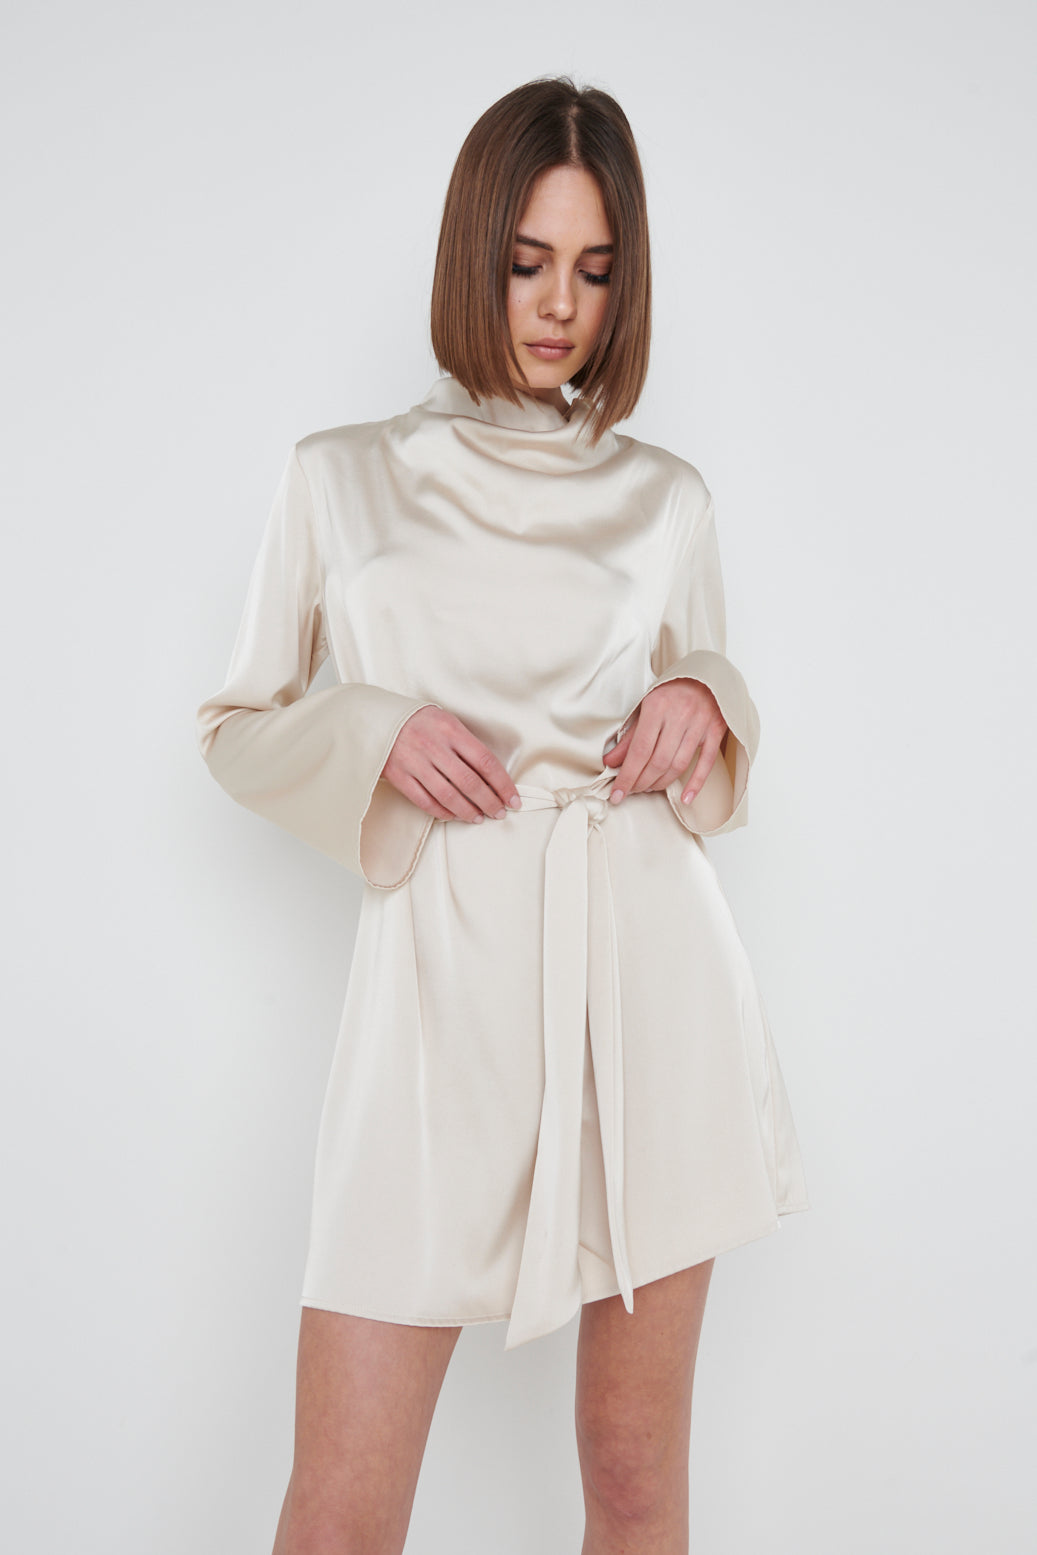 Jayda Cowl Neck Dress - Oyster, XL